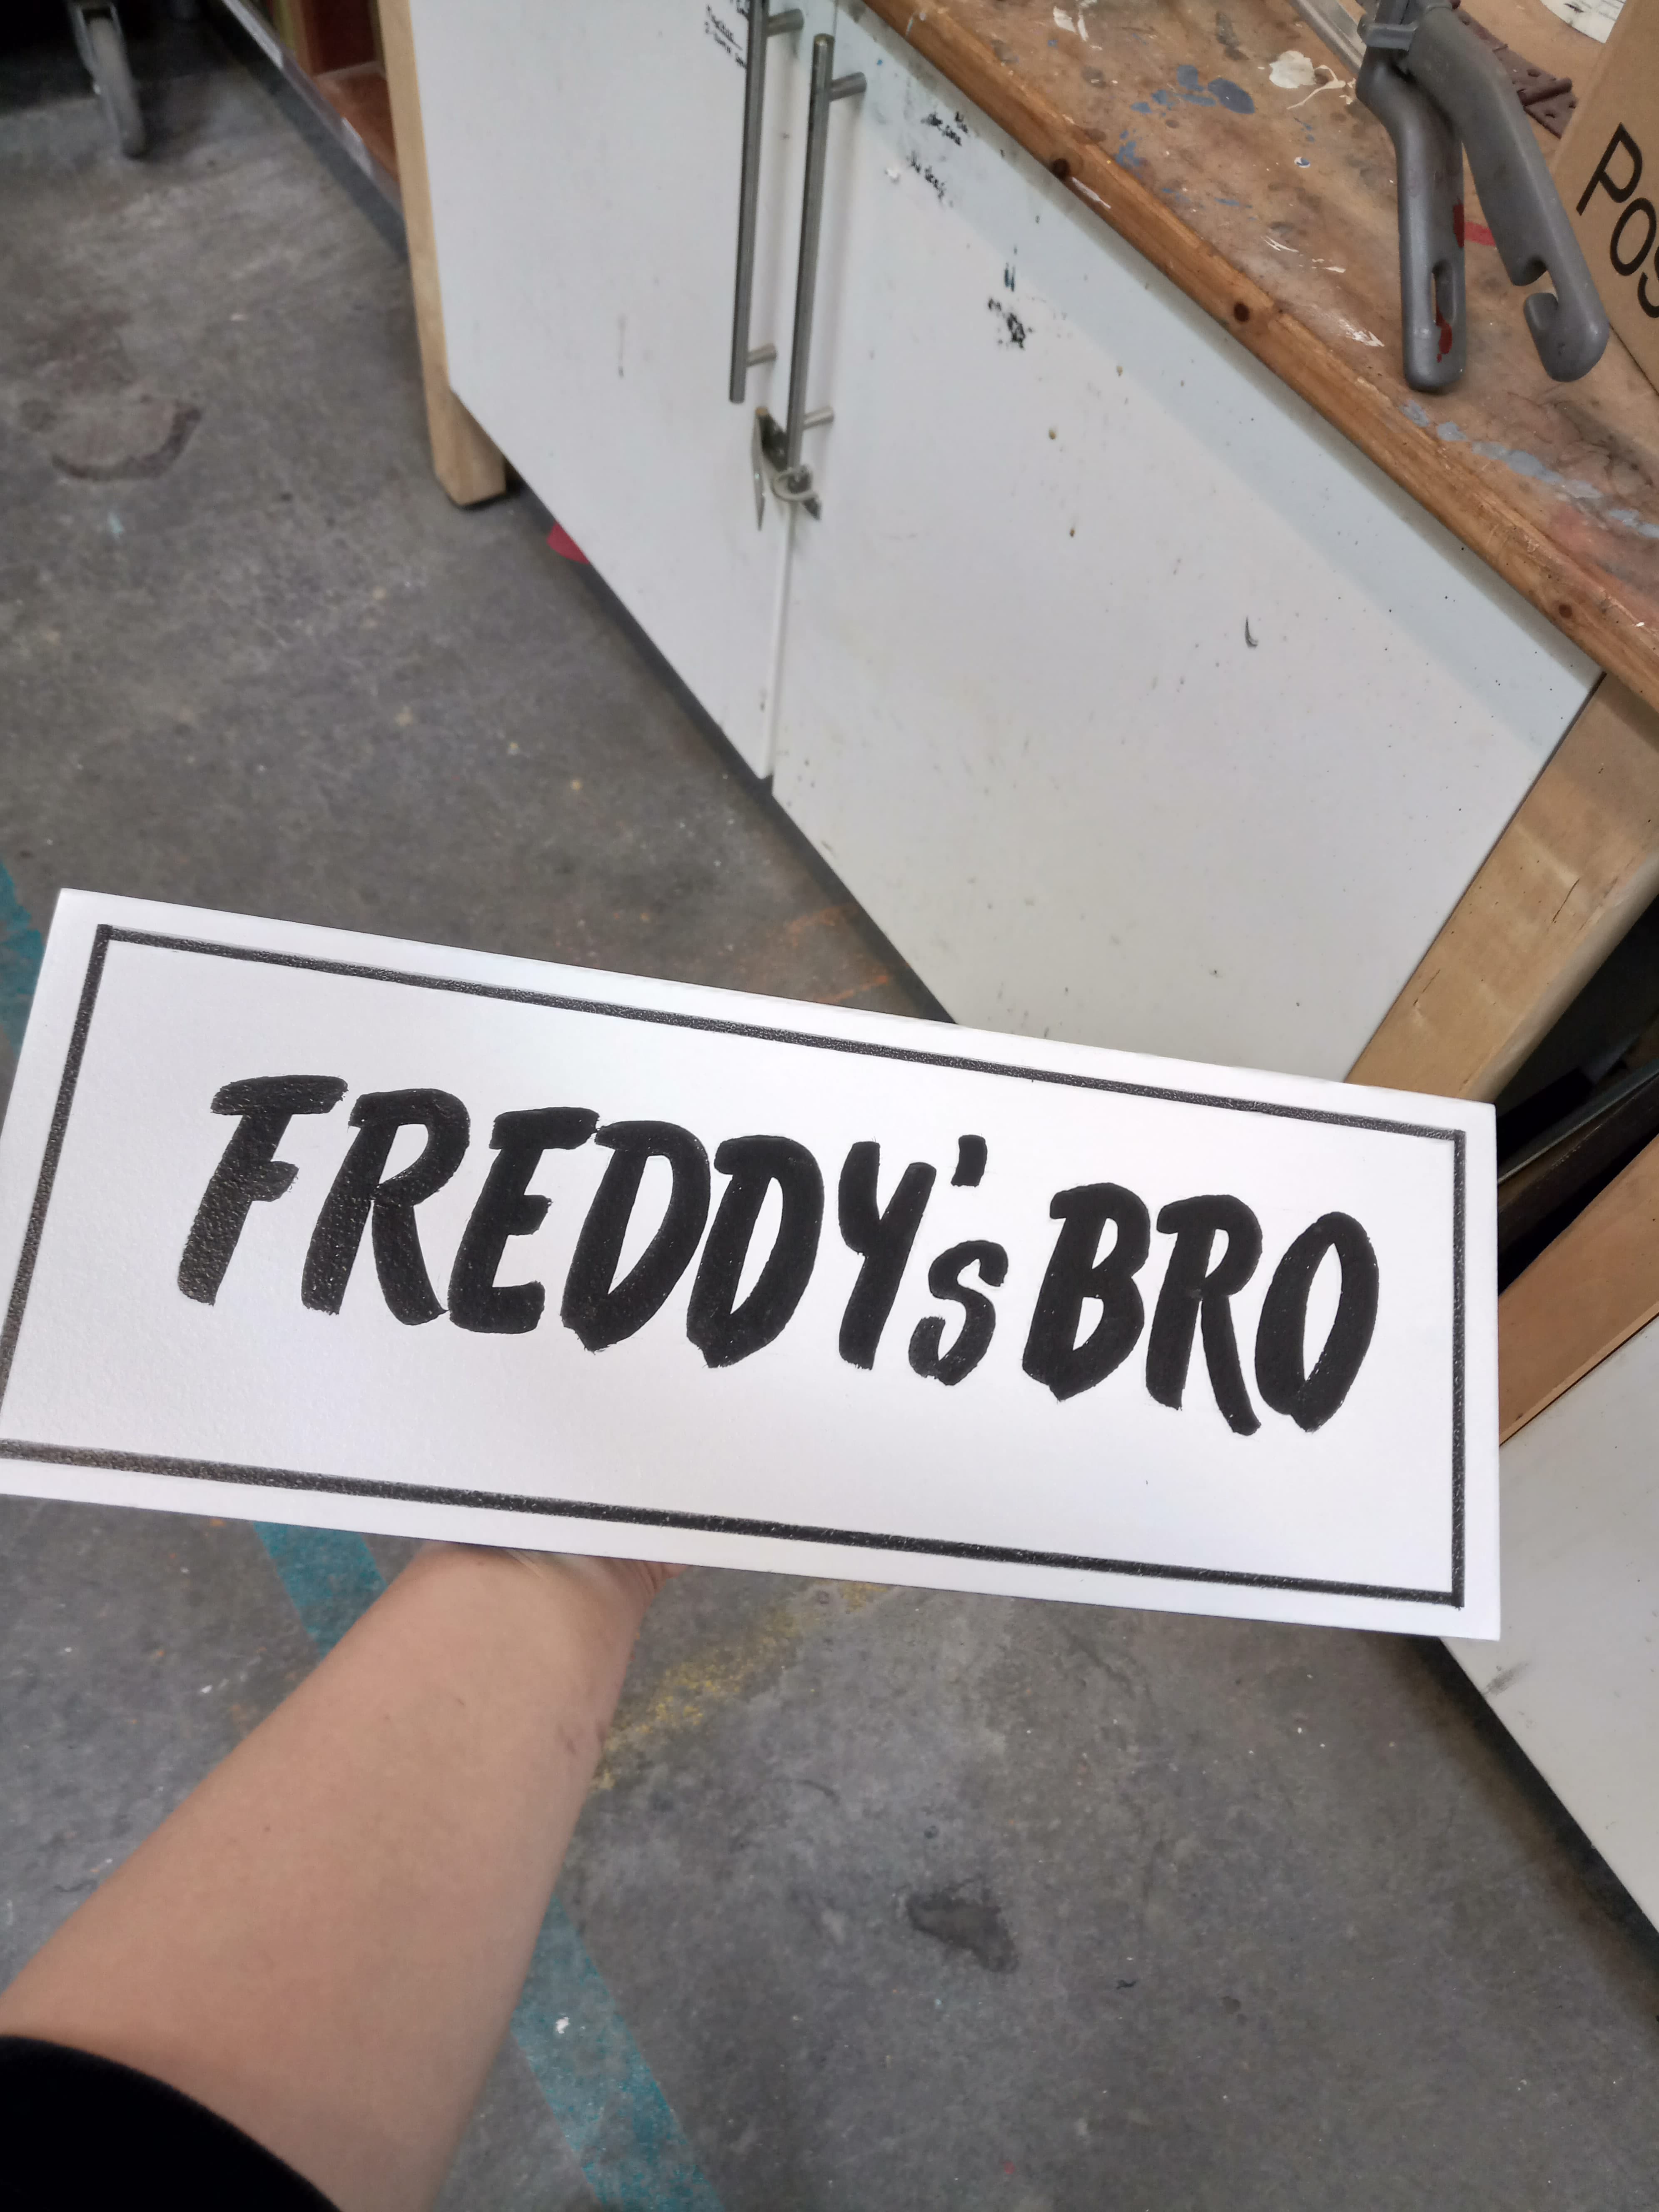 Freddys bro